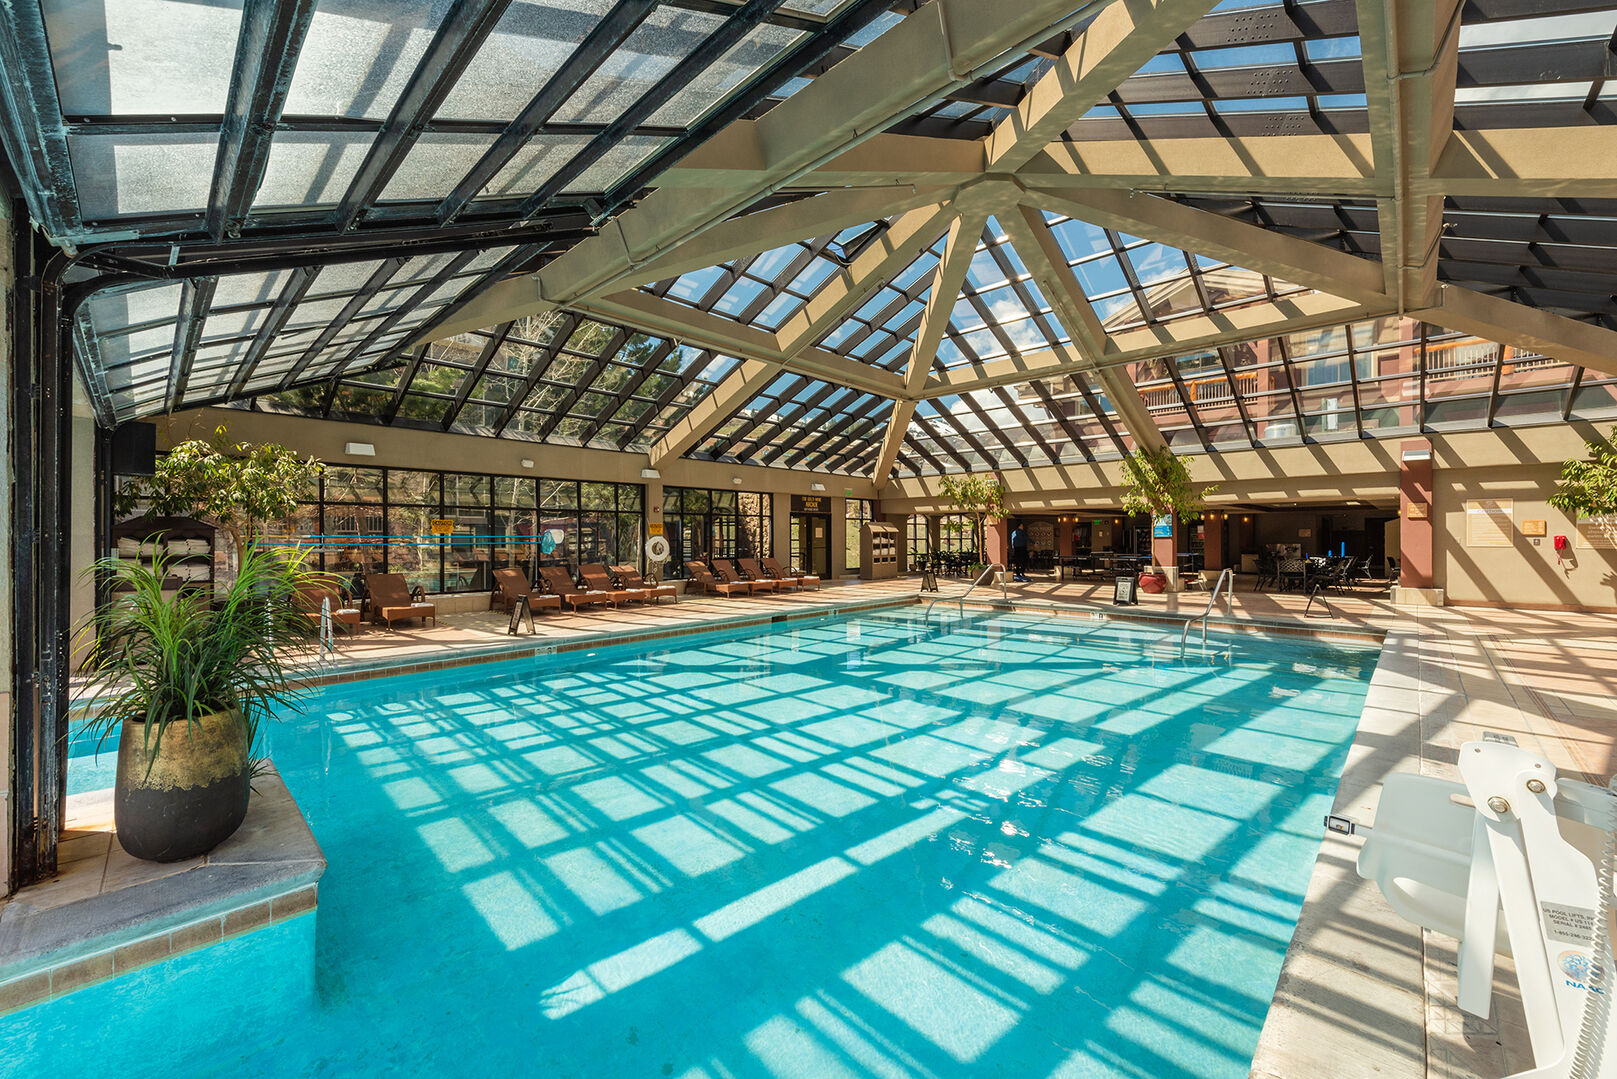 Main (indoor/outdoor) pool